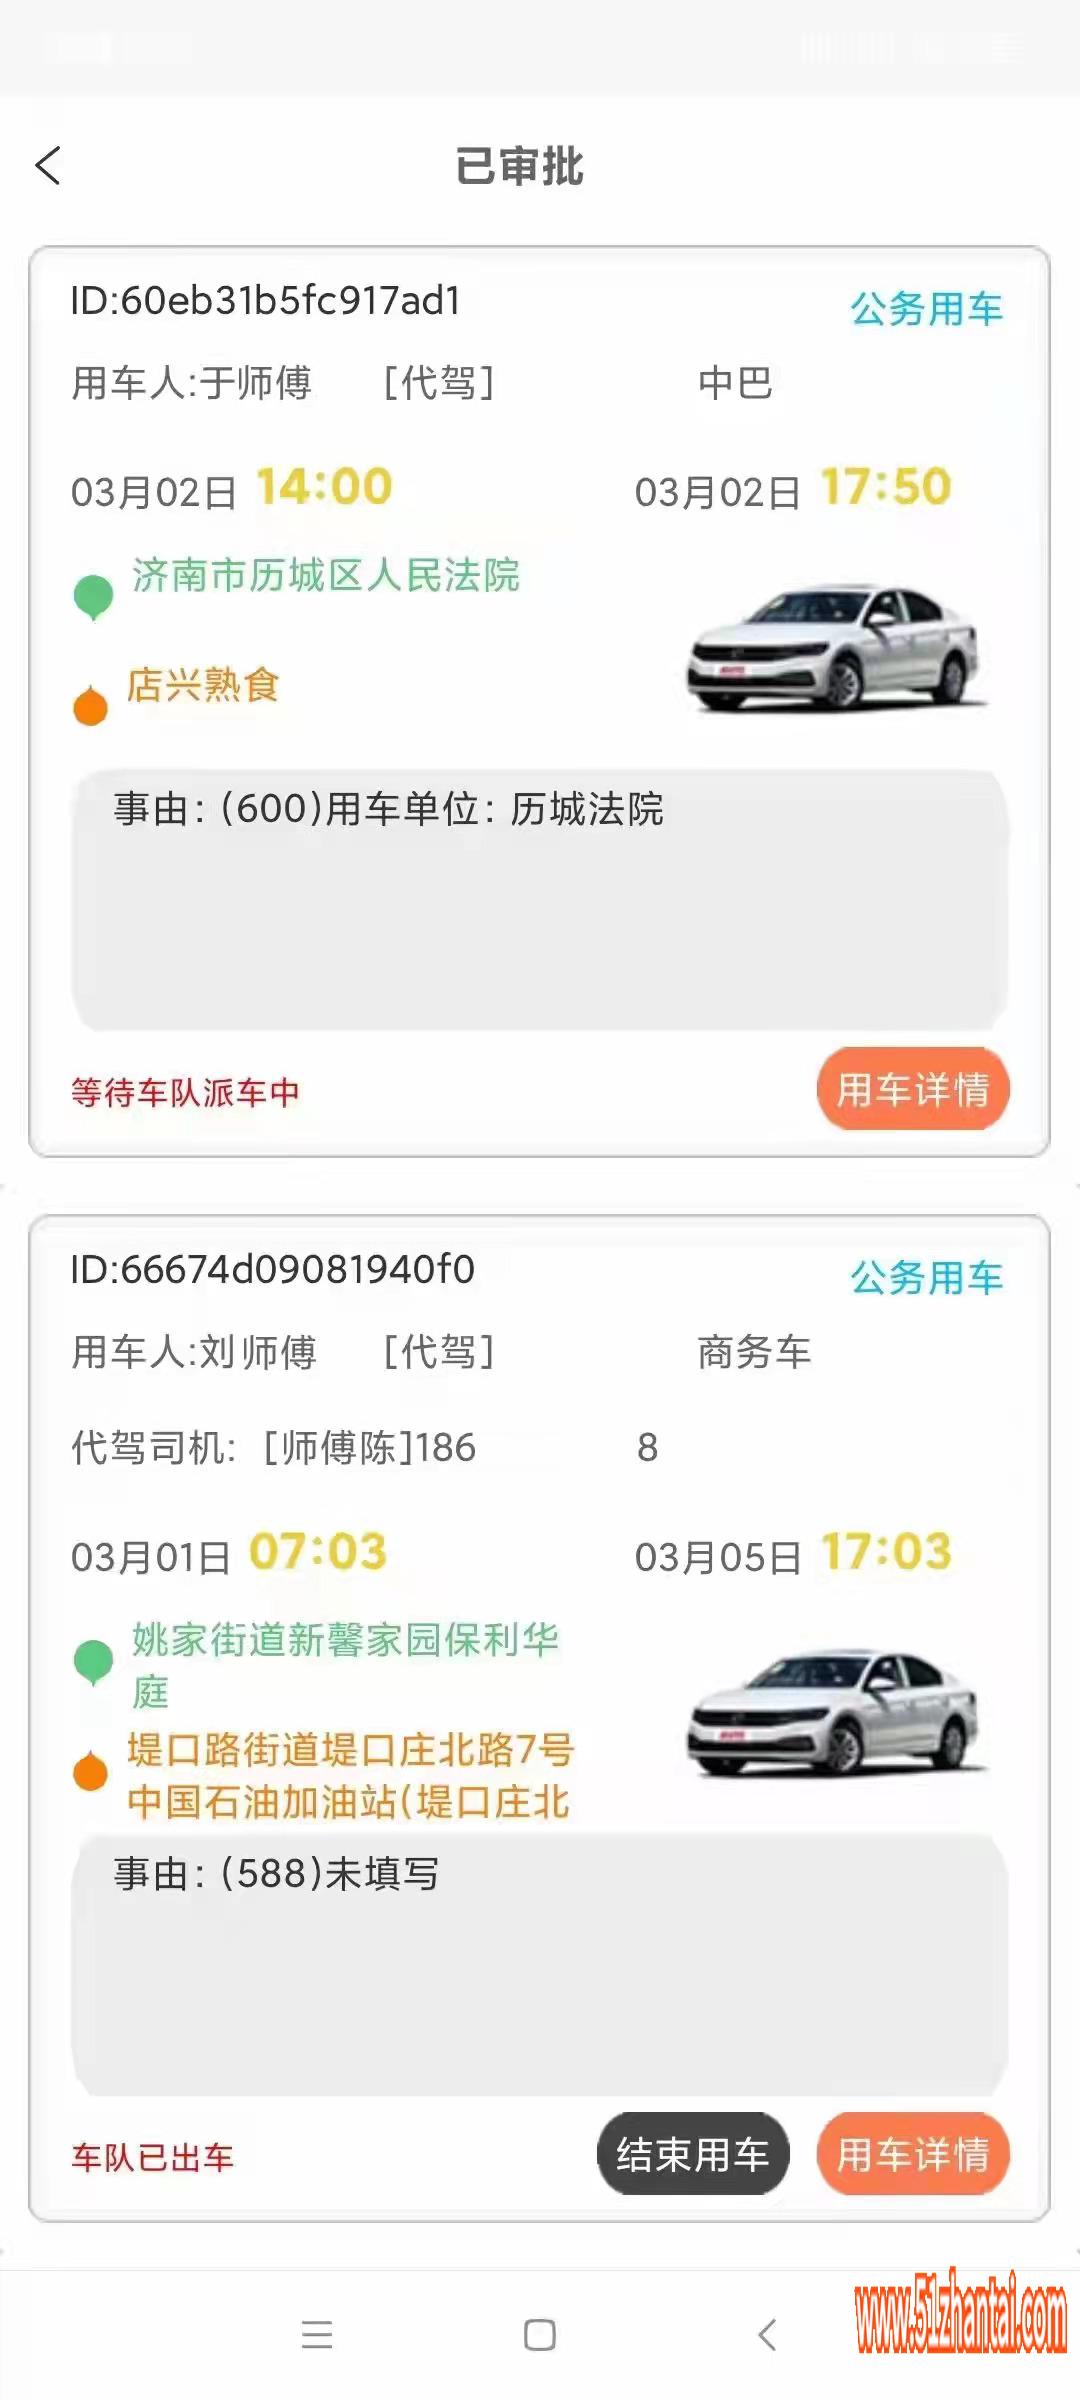 北京西城区企事业单位用车调度管理软件-图1